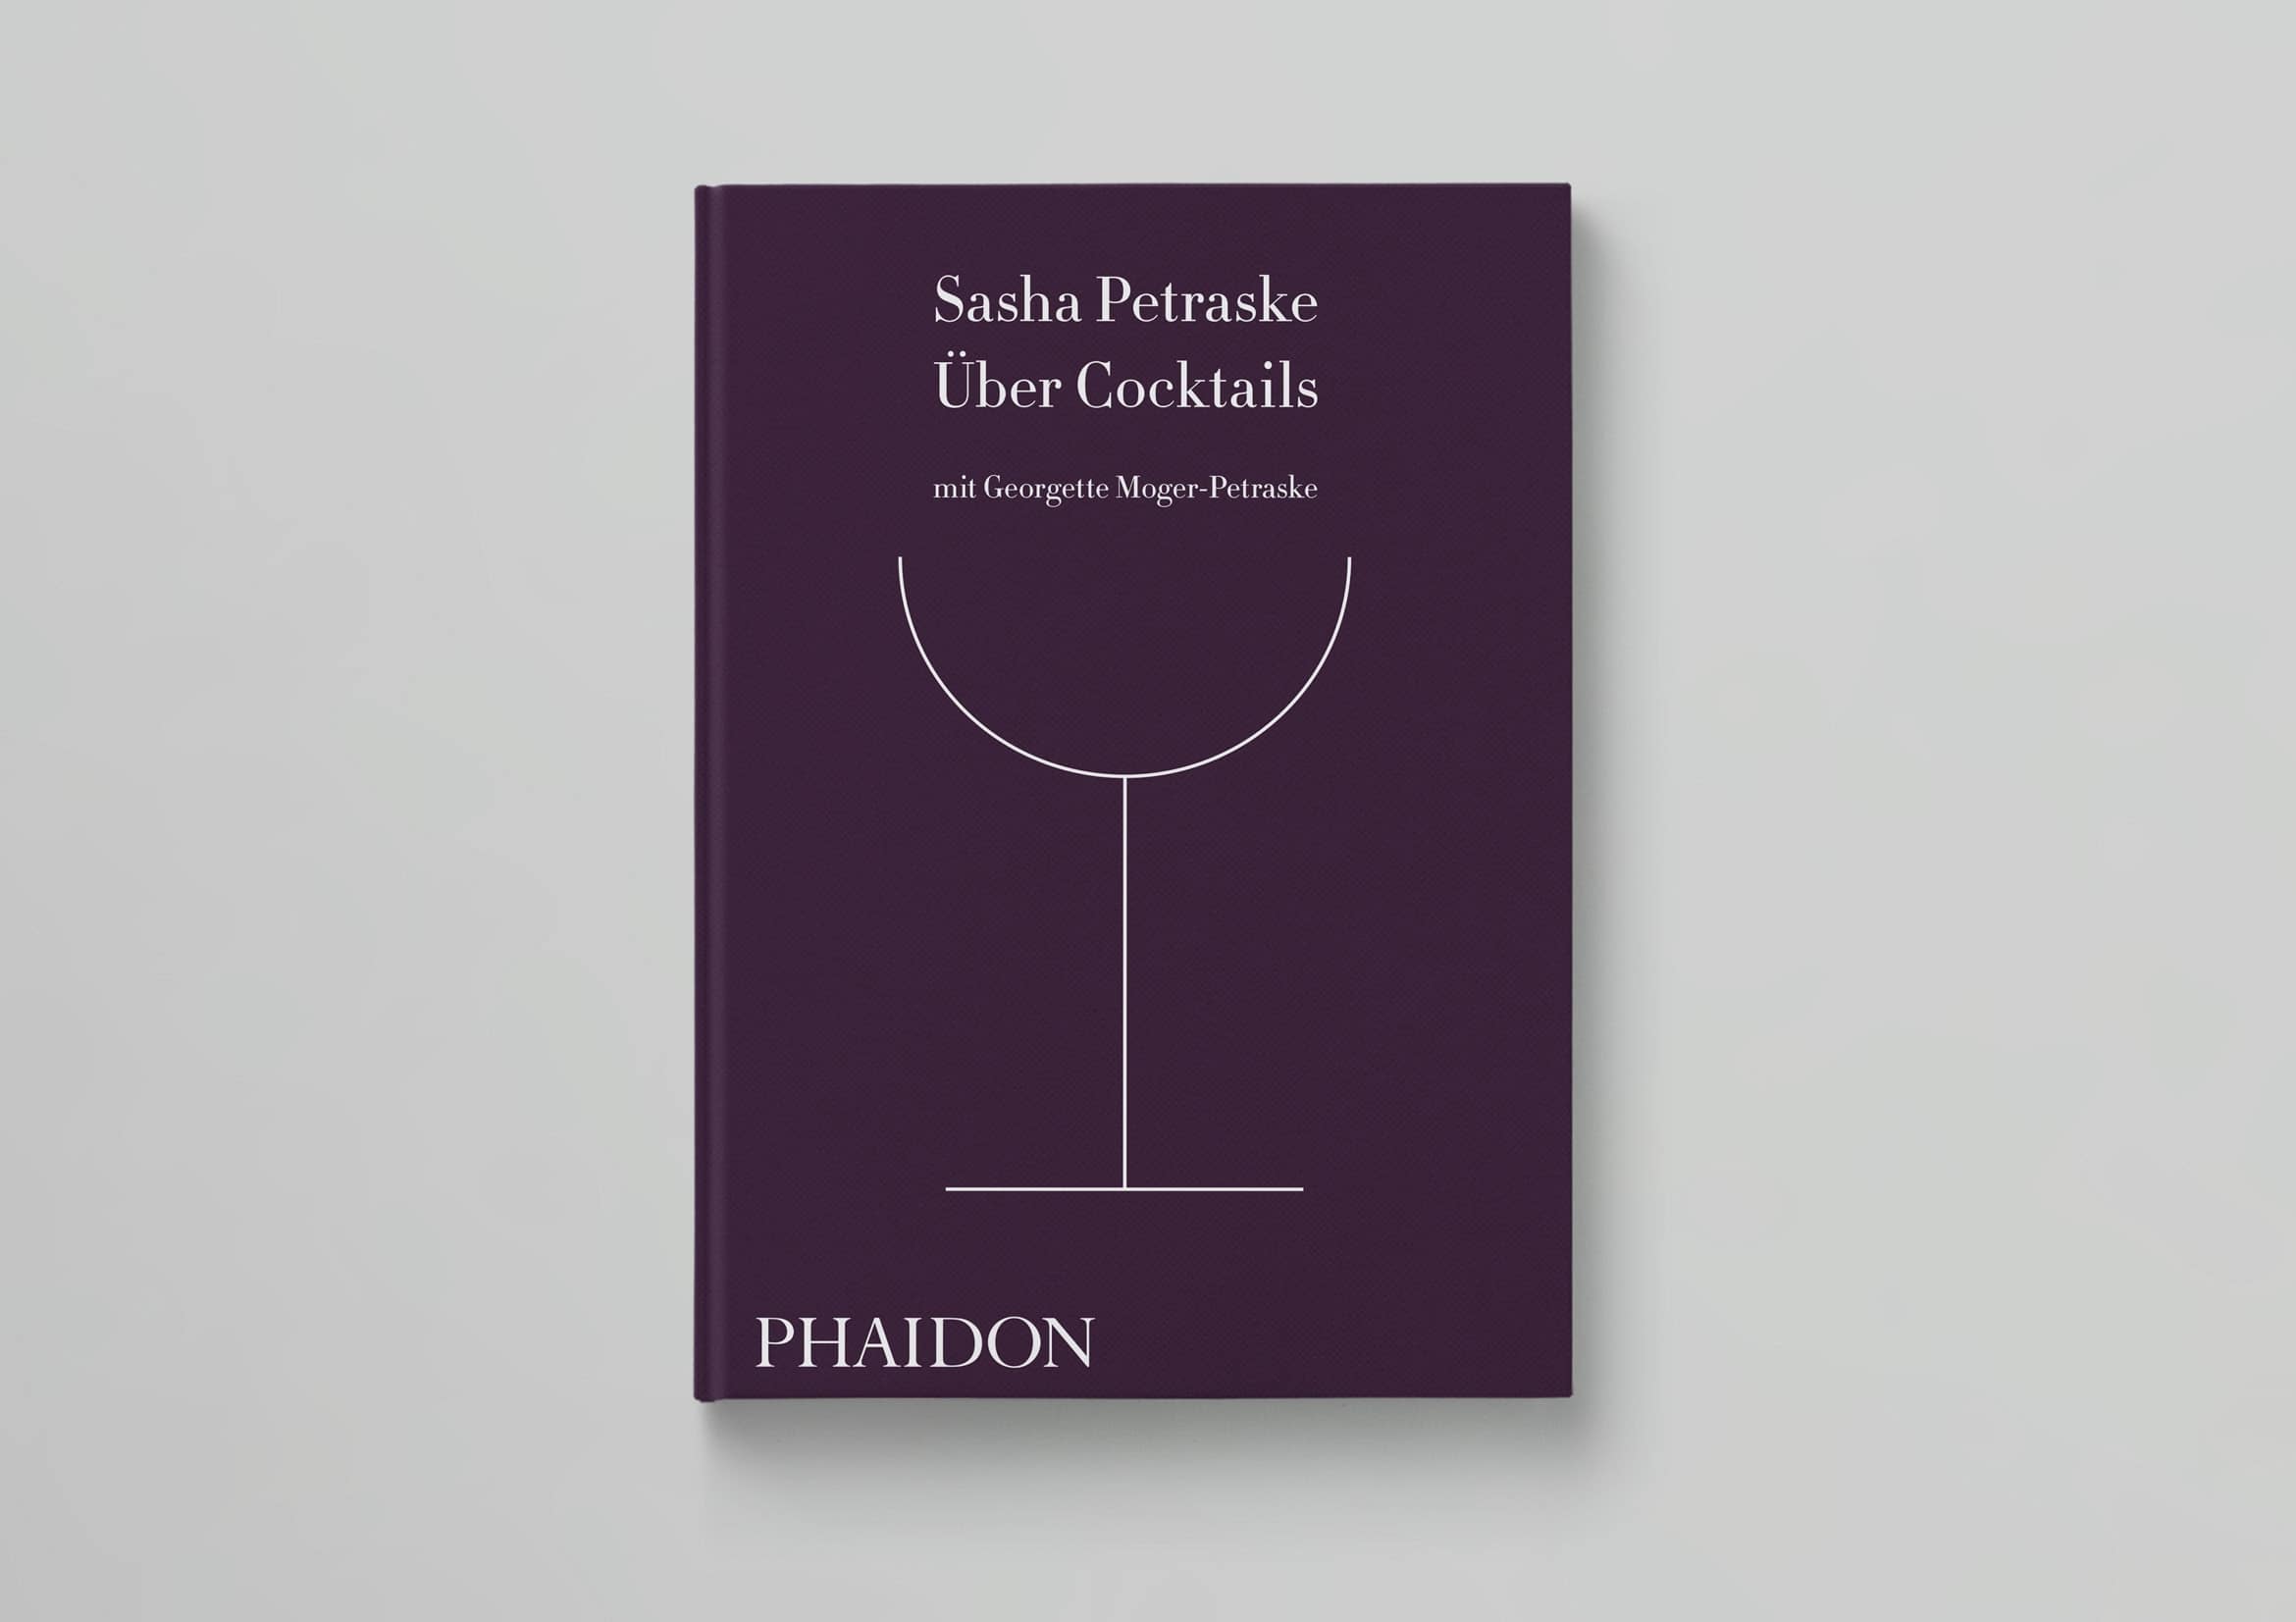 Petraske Phaidon Cocktails Übersetzung, Lektorat und Satz der deutschen Ausgabe